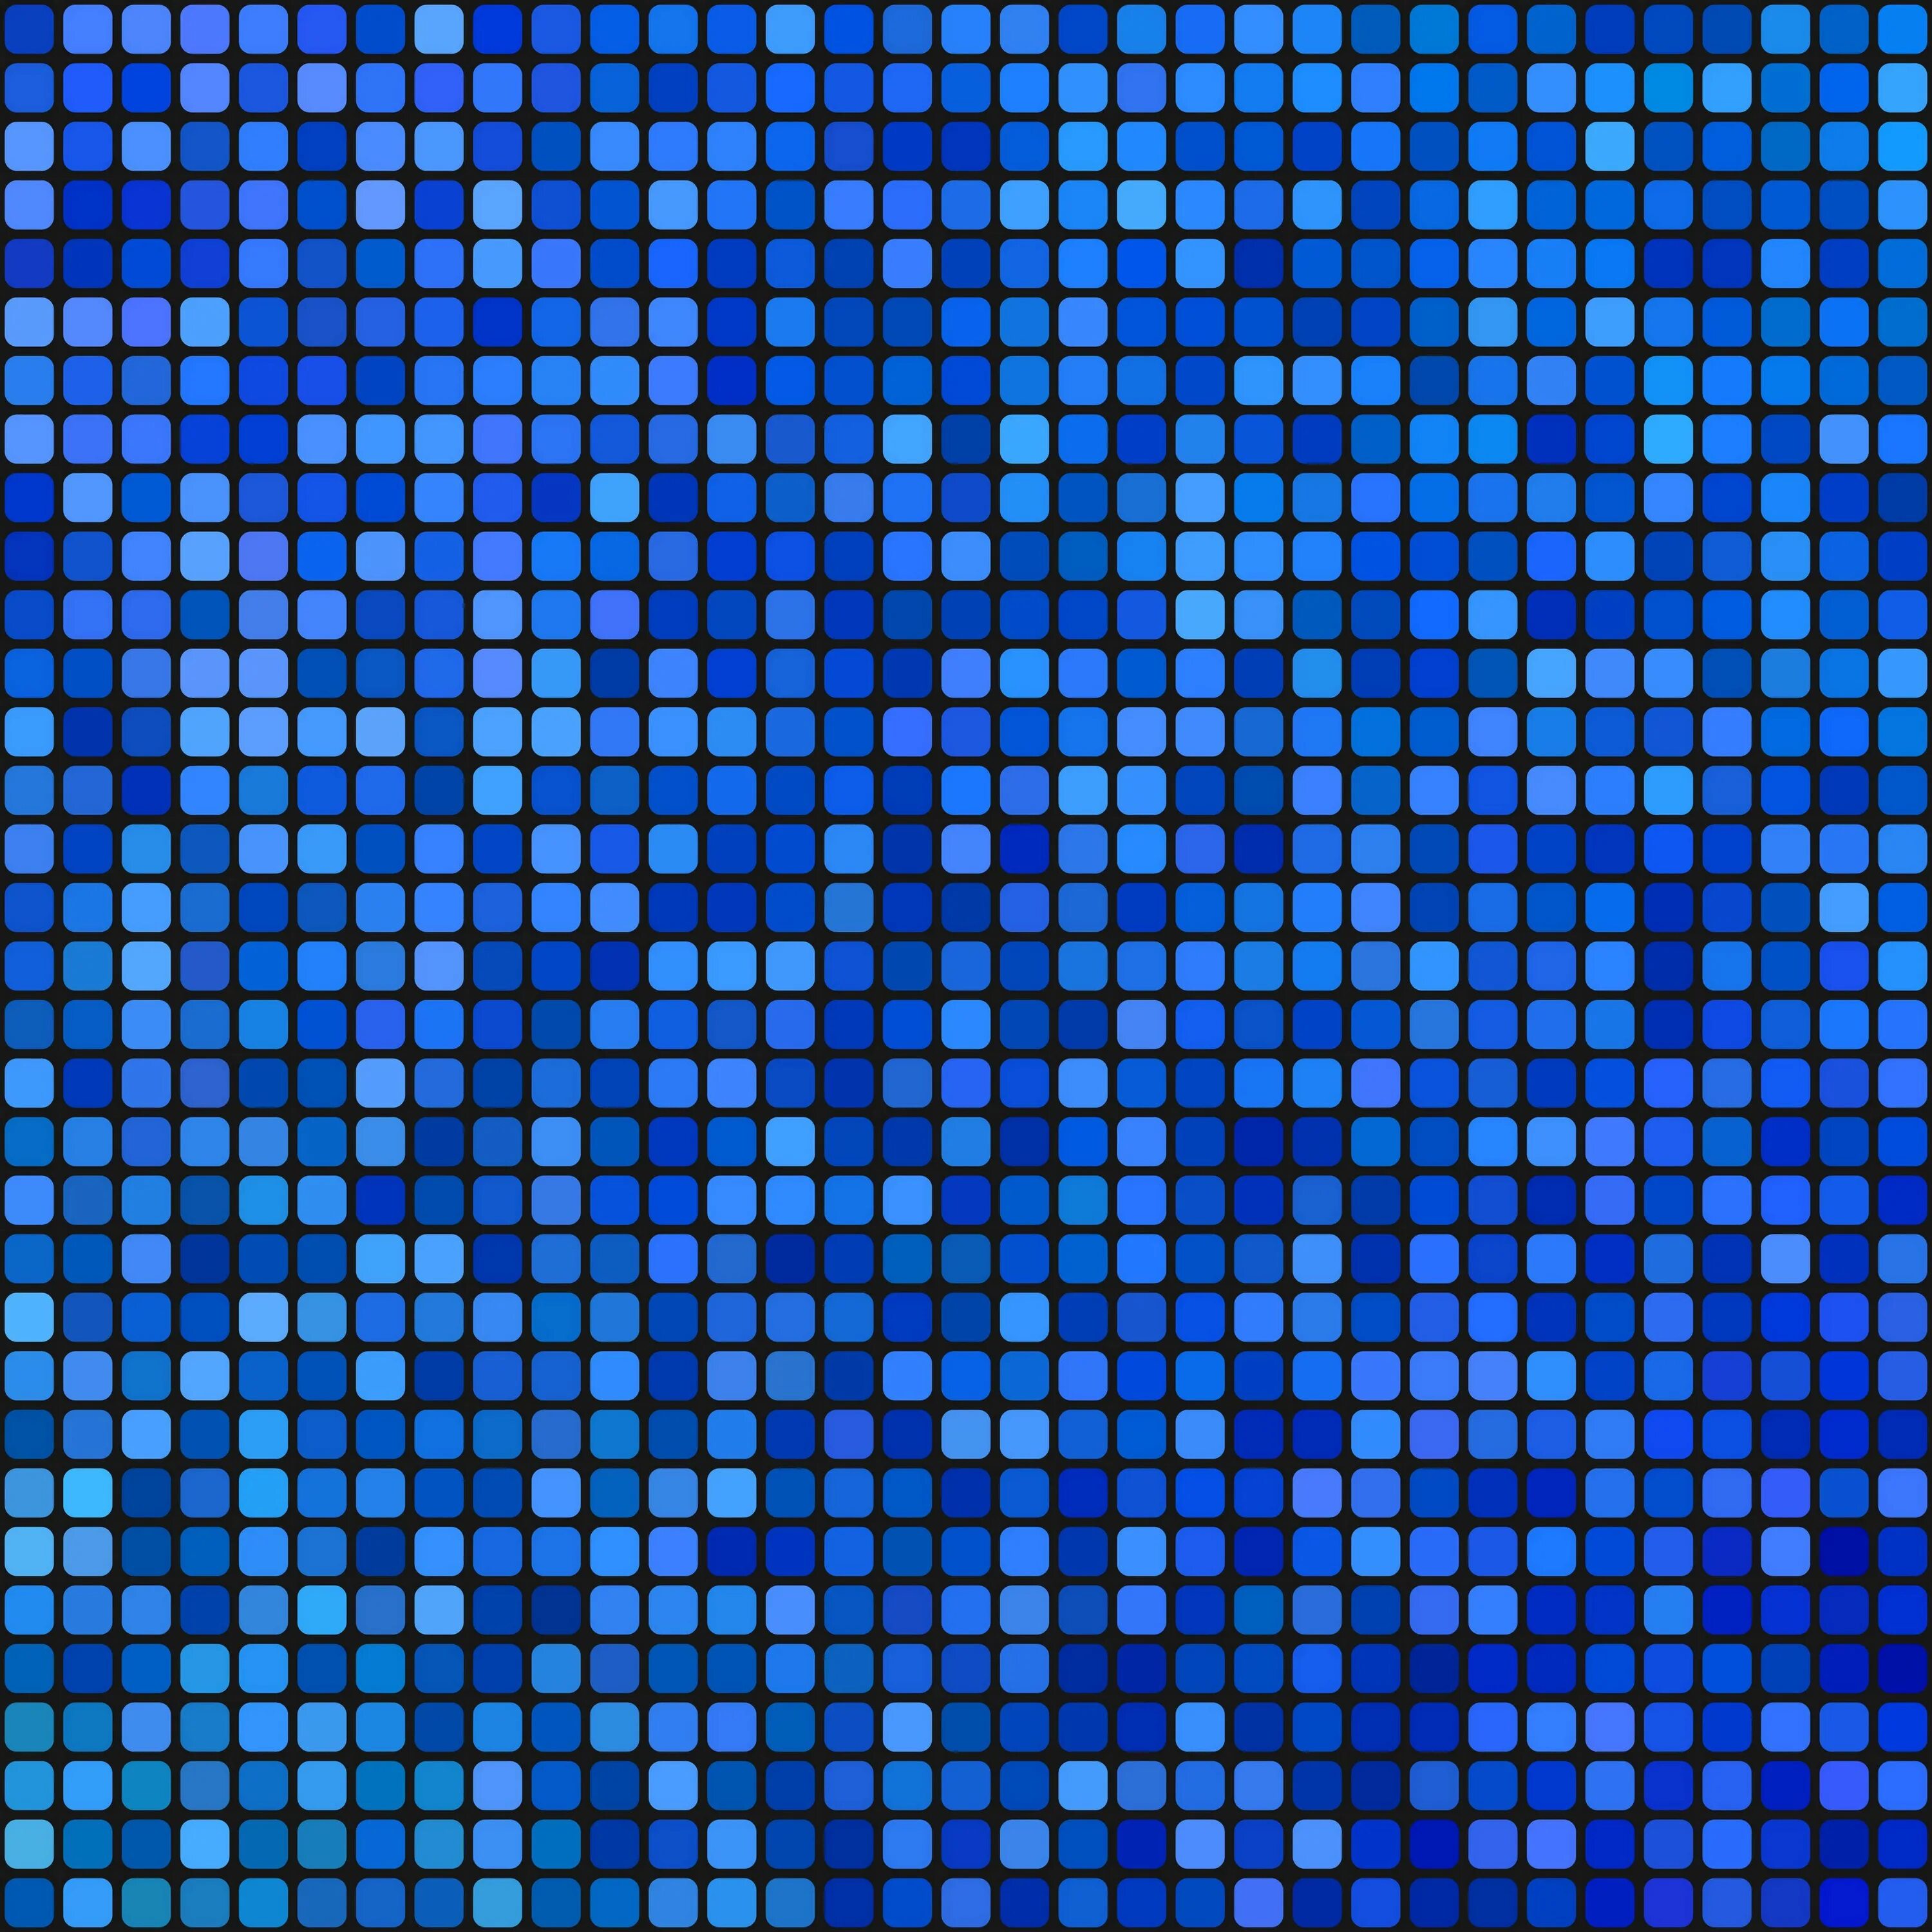 Мозаика синяя. Мозаика синяя голубая. Синий квадрат. Плитка мозаика синяя. Мозаичный квадрат